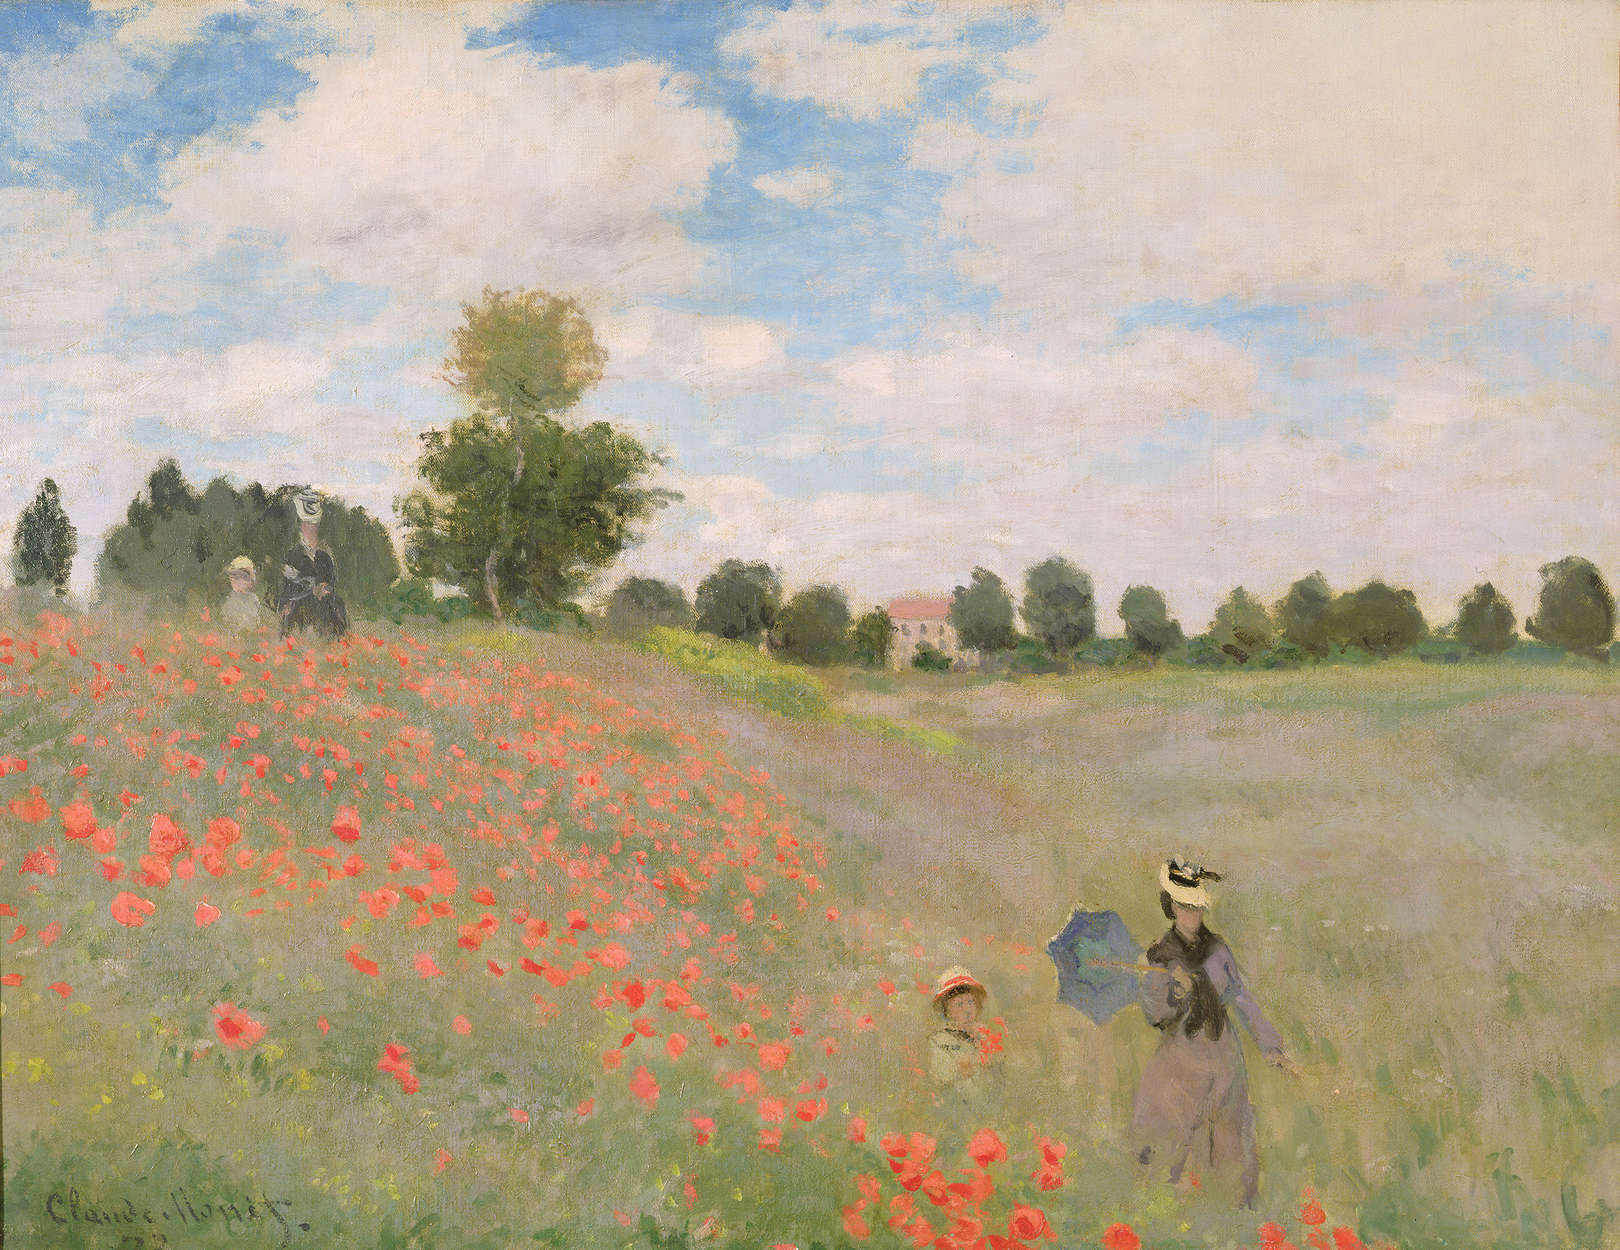             Fototapete "Wilde Mohnblumen" von Claude Monet
        